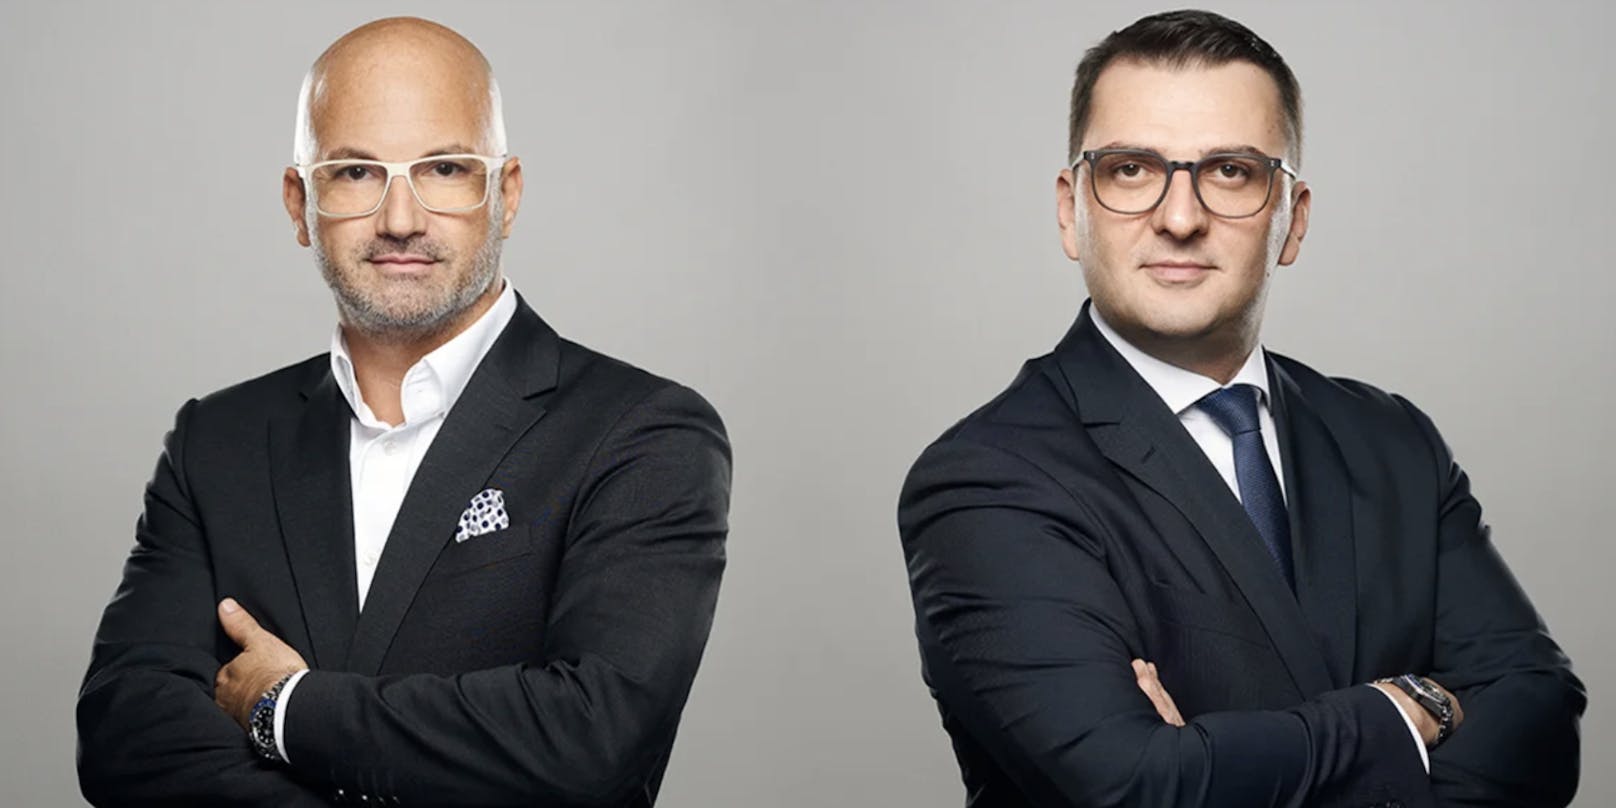 Die renommierten Wiener Anwälte Nikolaus Rast und Mirsad Musliu vertreten den Verdächtigen vor Gericht.